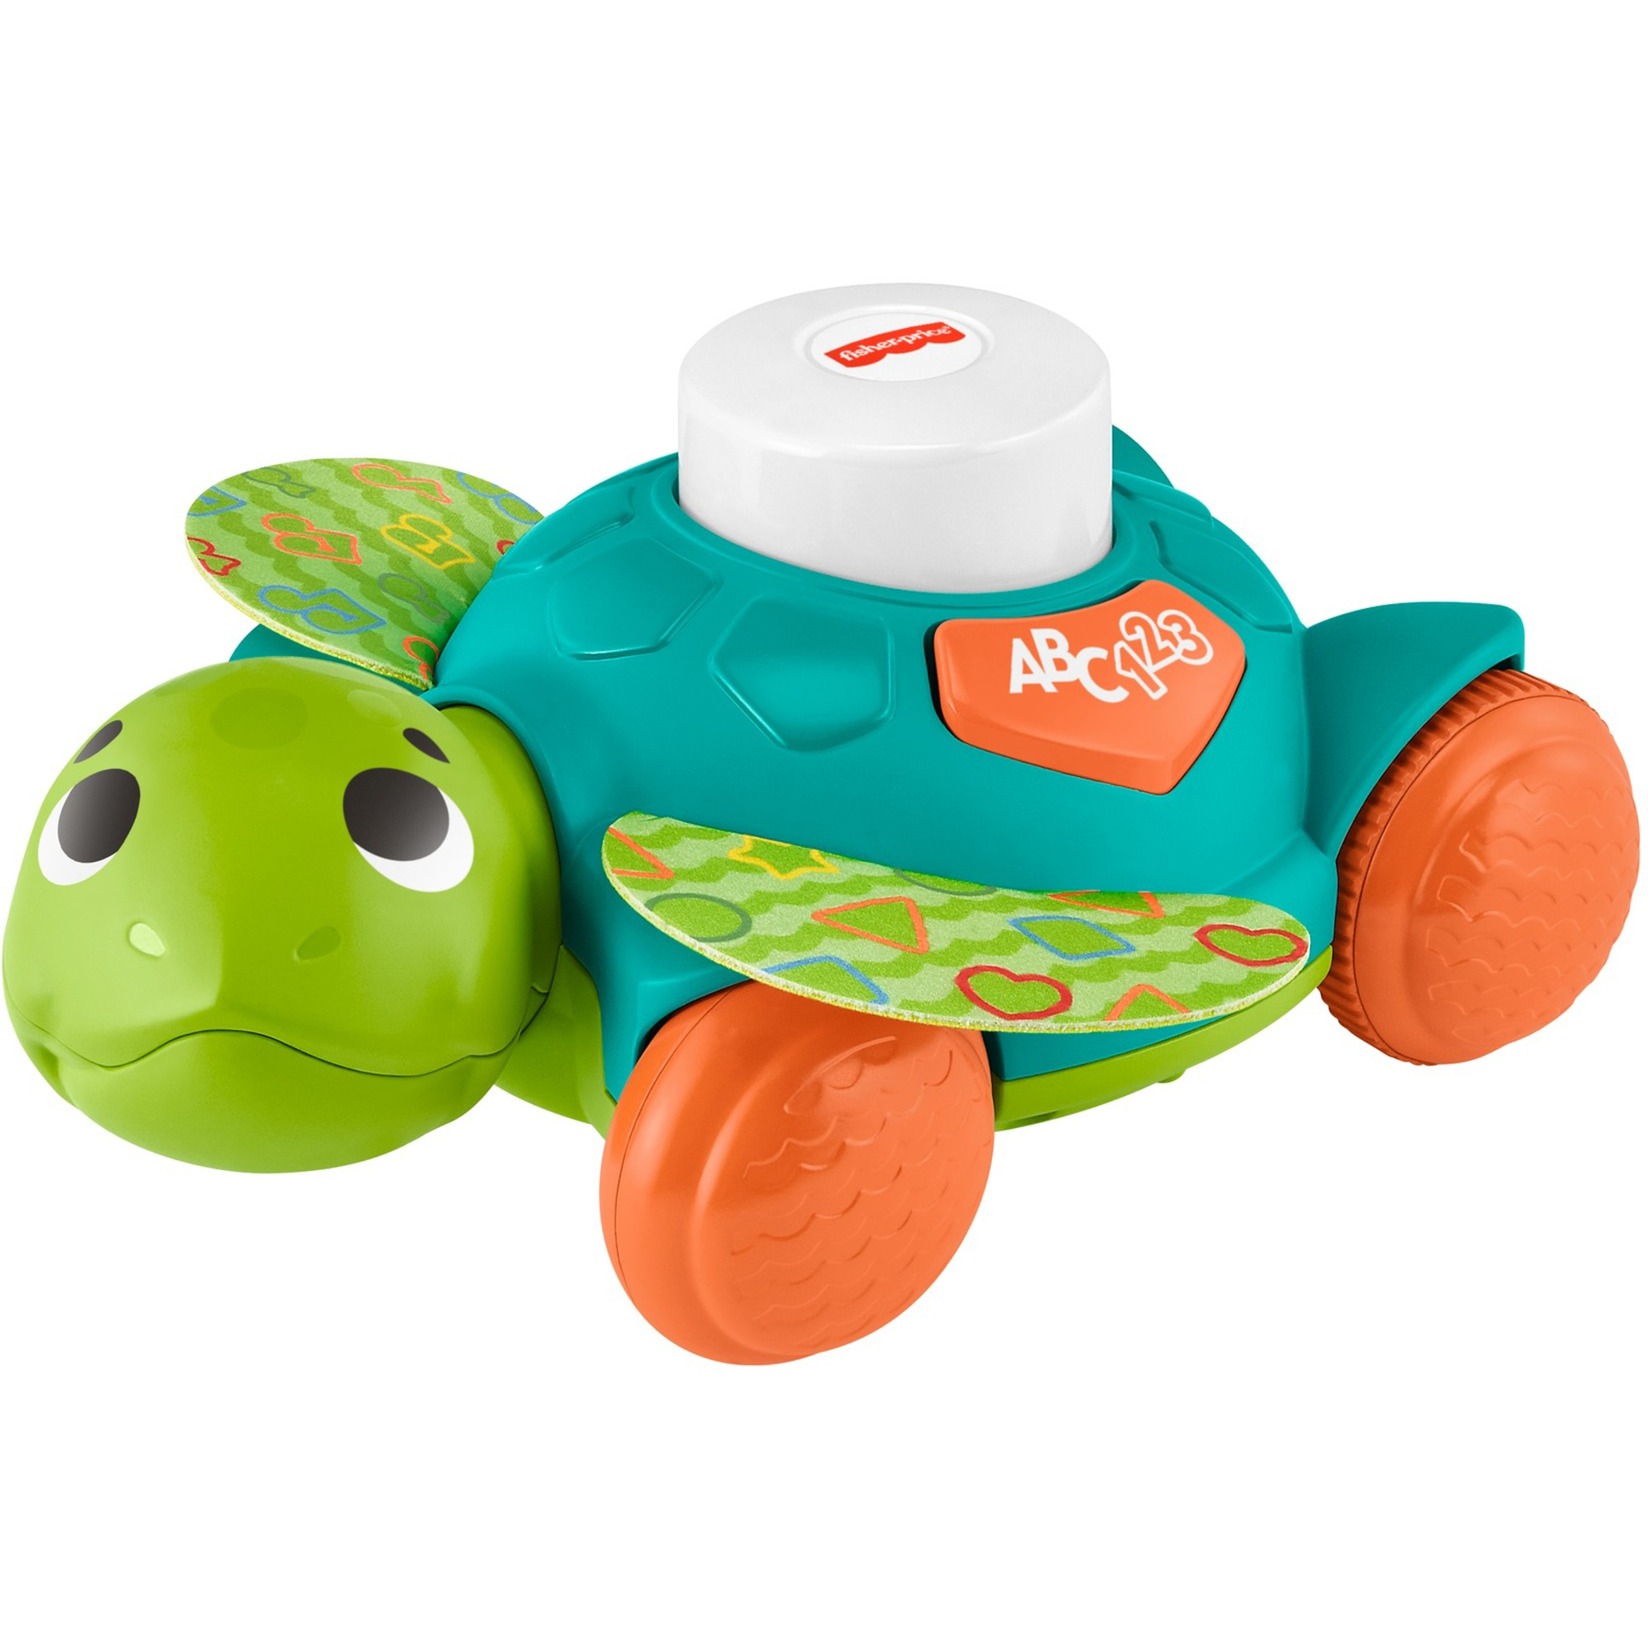 Image of Alternate - BlinkiLinkis Meeresschildkröte, Spielfigur online einkaufen bei Alternate